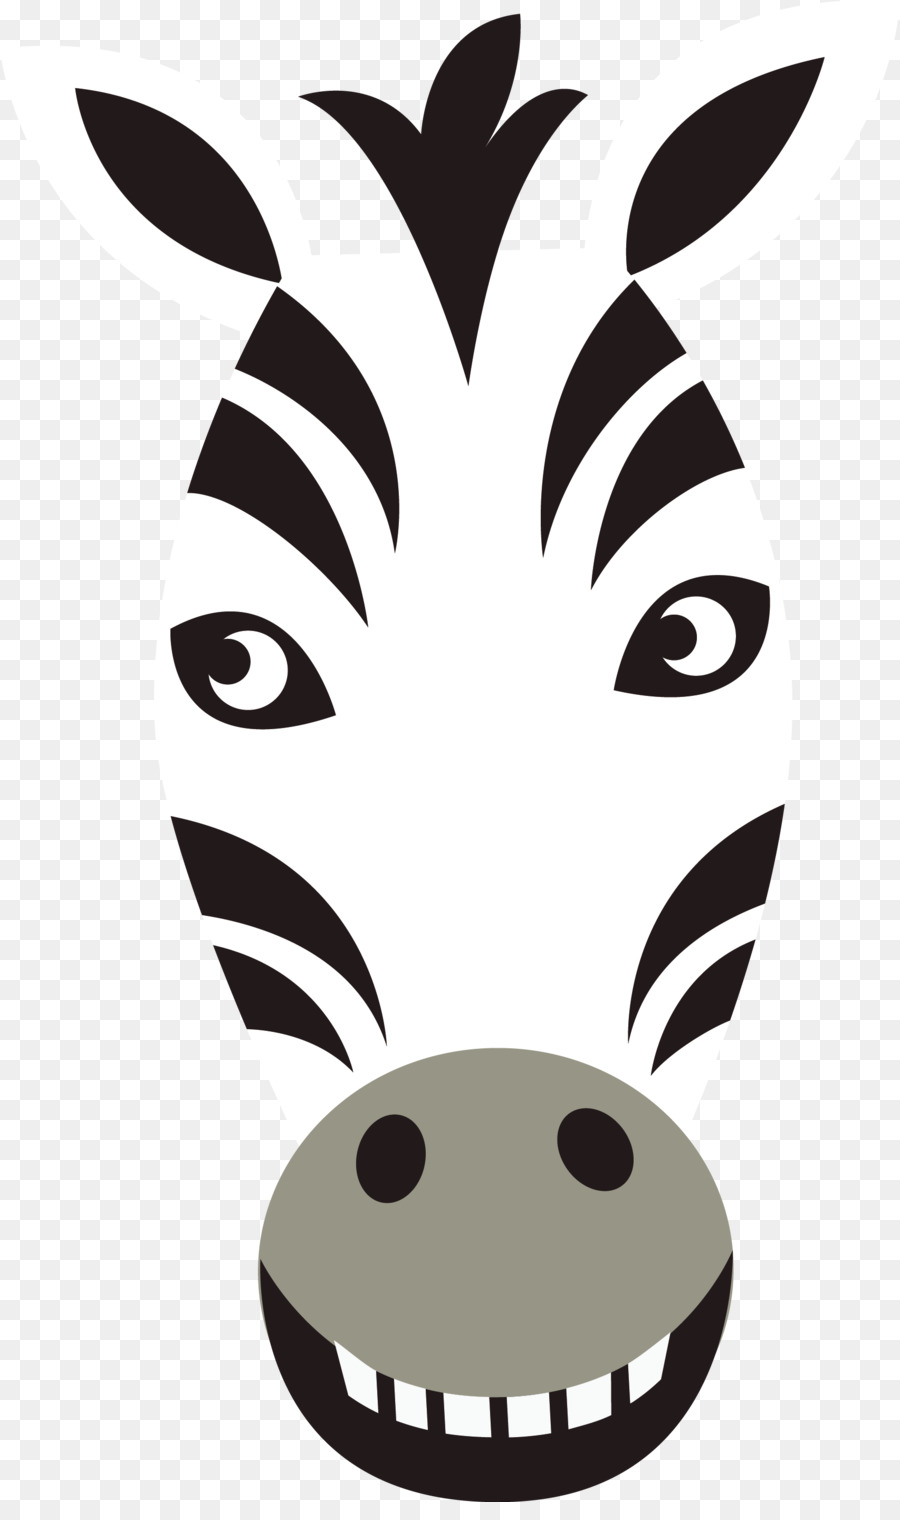 Wild boar Deer Head Animal - Zebra vector png download - 1706*2847 - Free Transparent Wild Boar png Download.